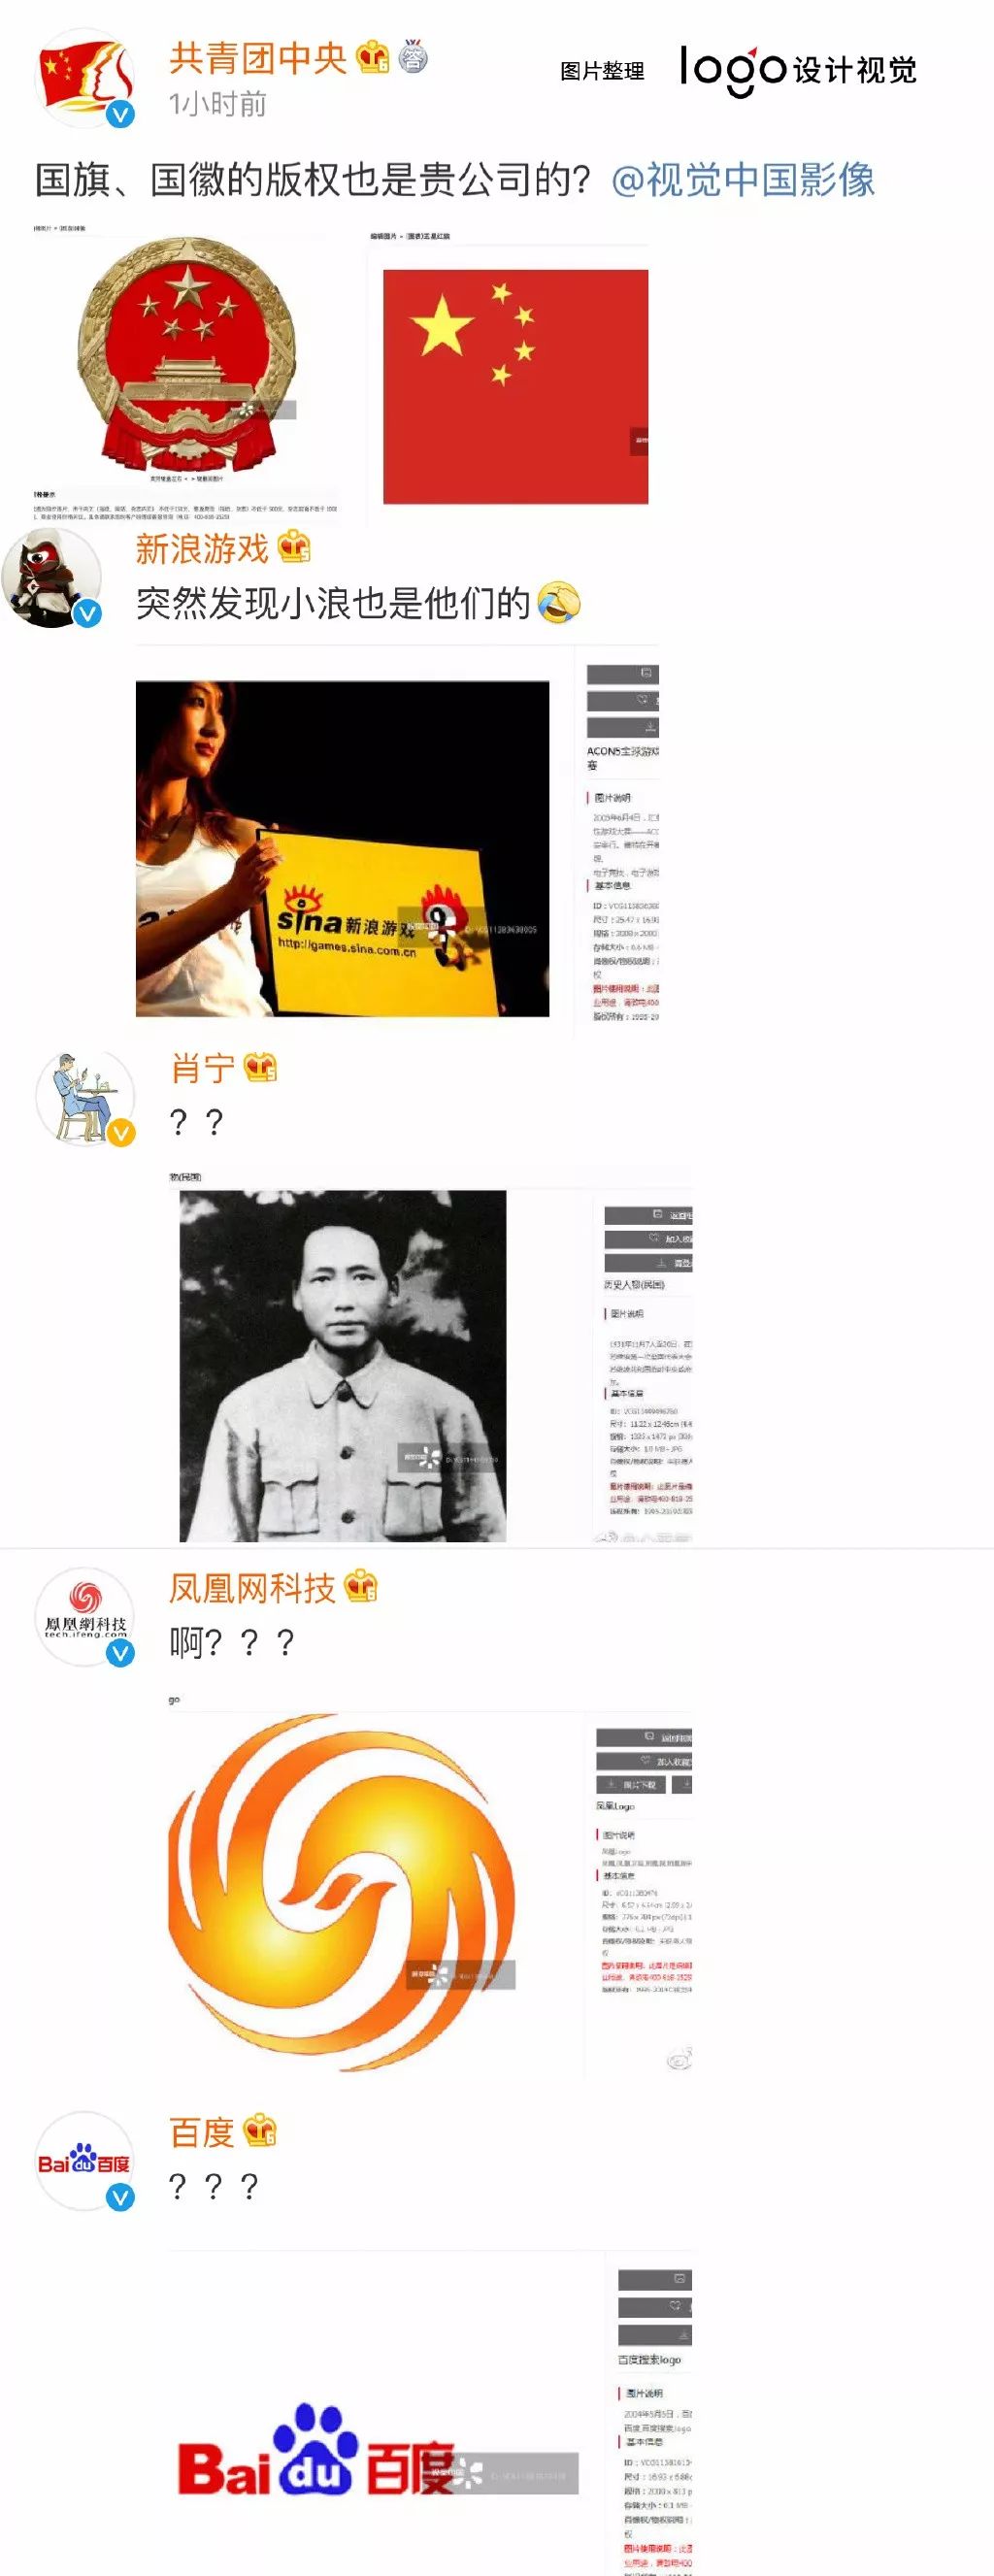 视觉中国被声讨后网站无法打开。良心推荐15个免费图片网站以备不时之需！双赢彩票(图5)